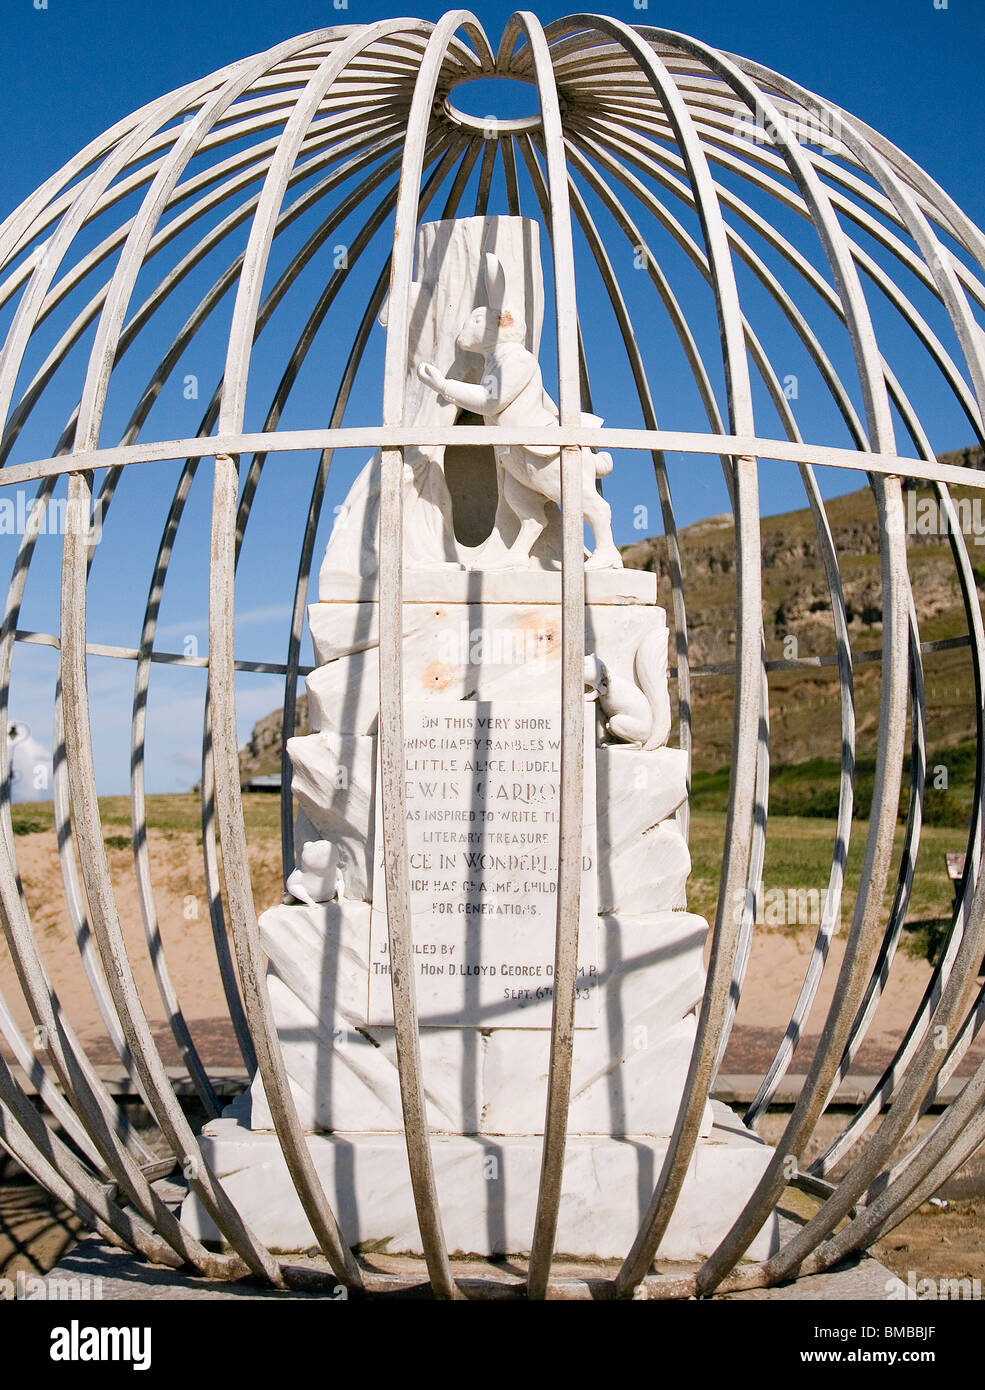 Un monumento a Lewis Carroll y Alicia en el país de las maravillas Foto de stock